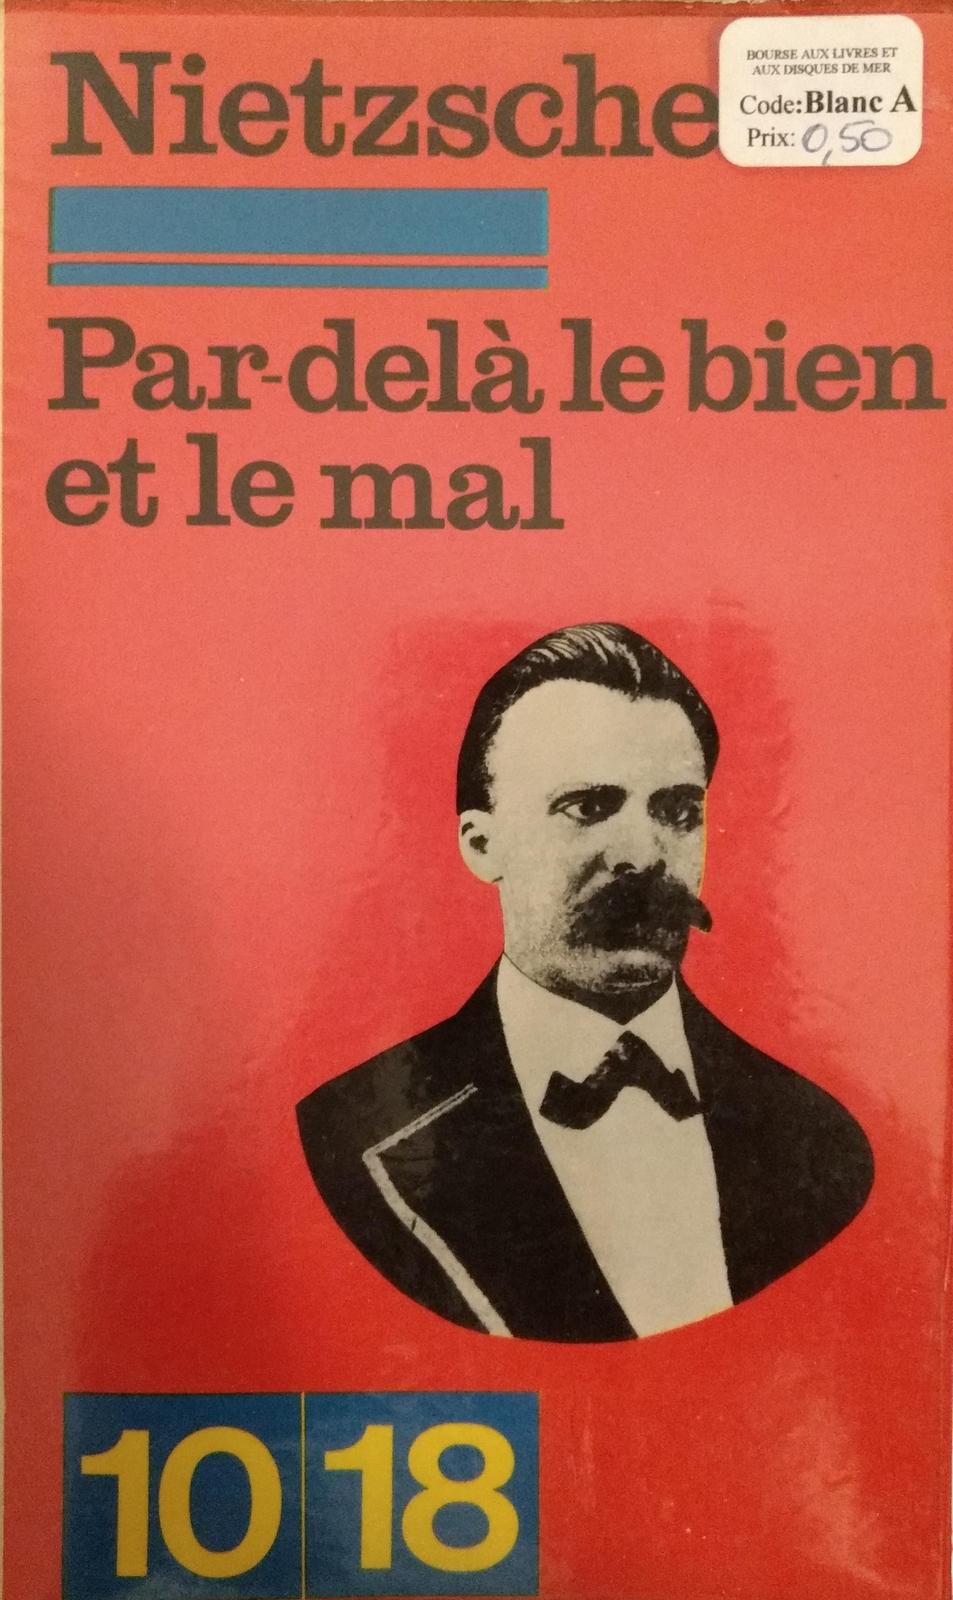 Friedrich Nietzsche: Par-delà le bien et le mal (French language, 1970, 10/18)